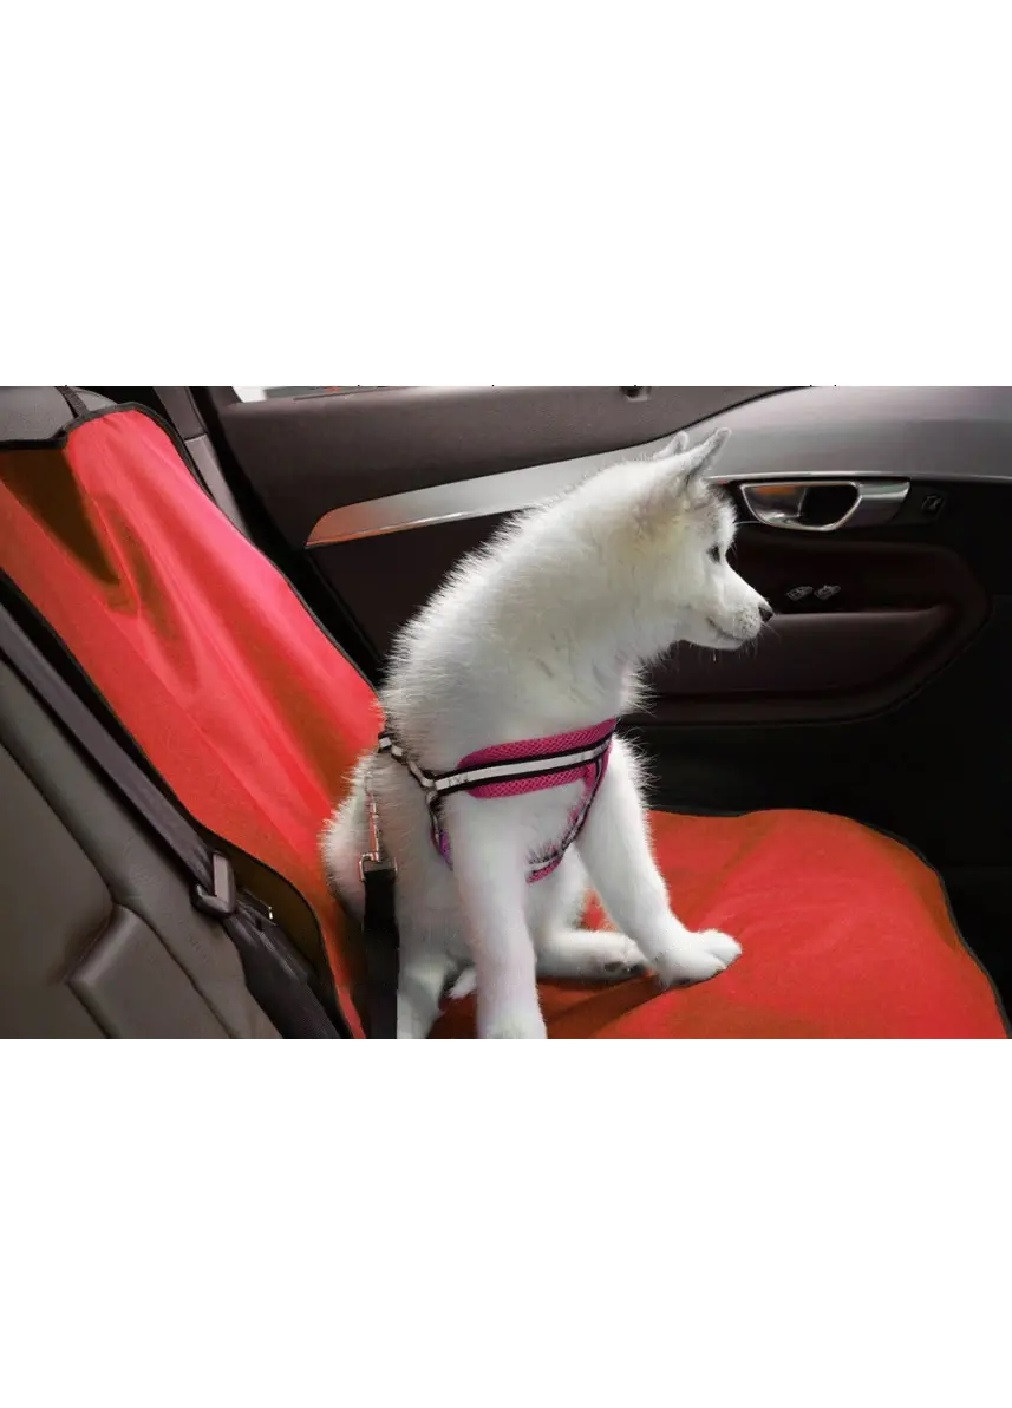 Автомобільний гамак накидка чохол на заднє сидіння авто для перевезення тварин собак кішок 134х132 см (473859-Prob) Unbranded (256675427)